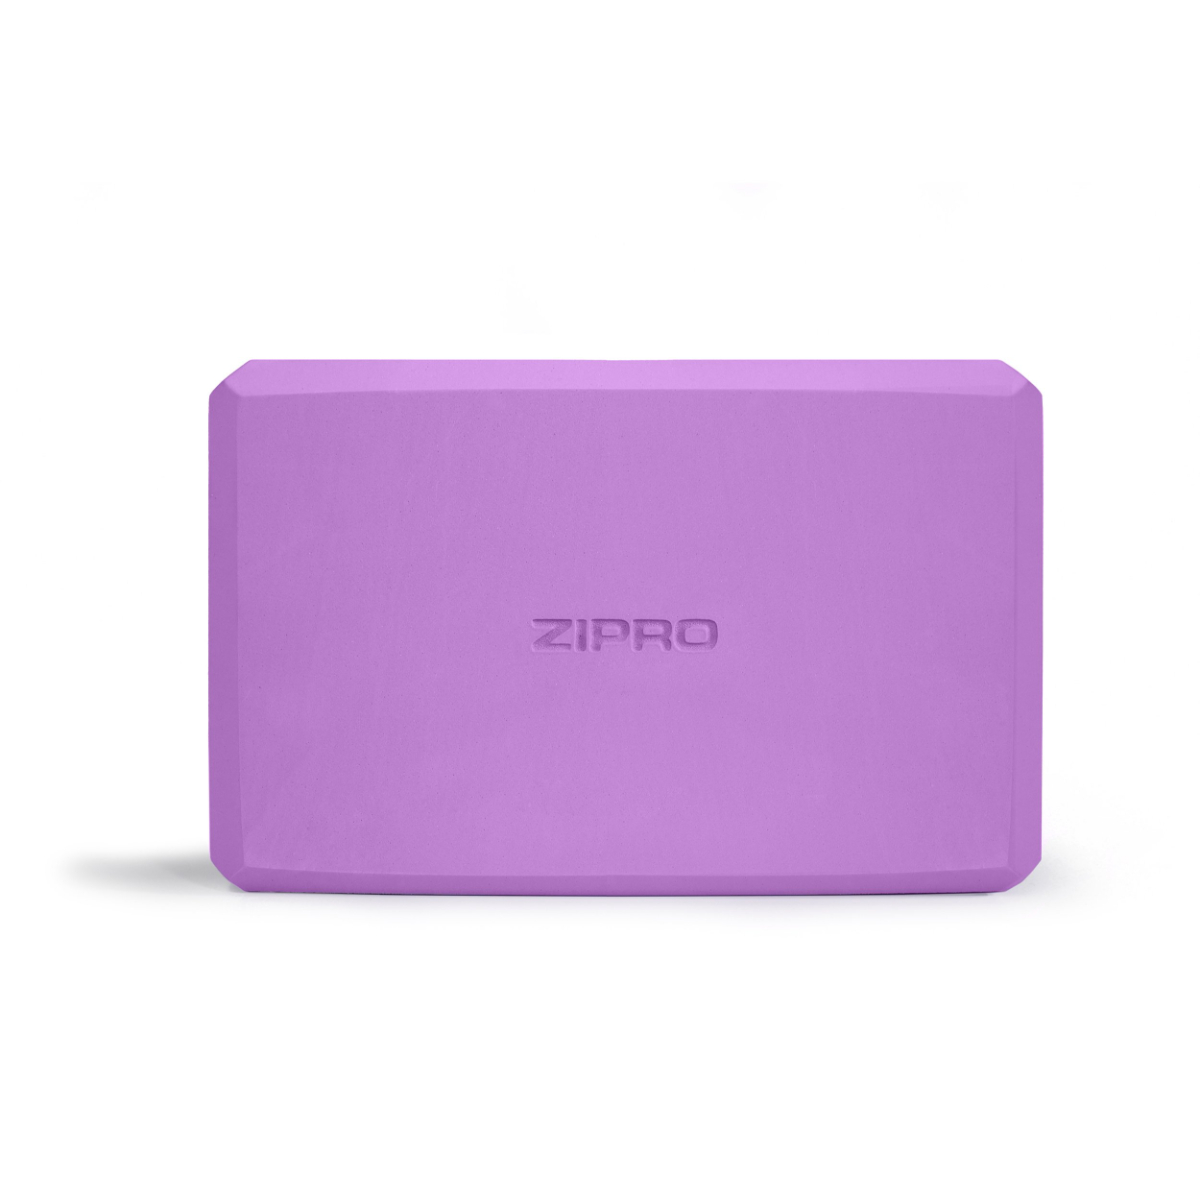 ZIPRO Yoga-Block Yoga-Block, Violett